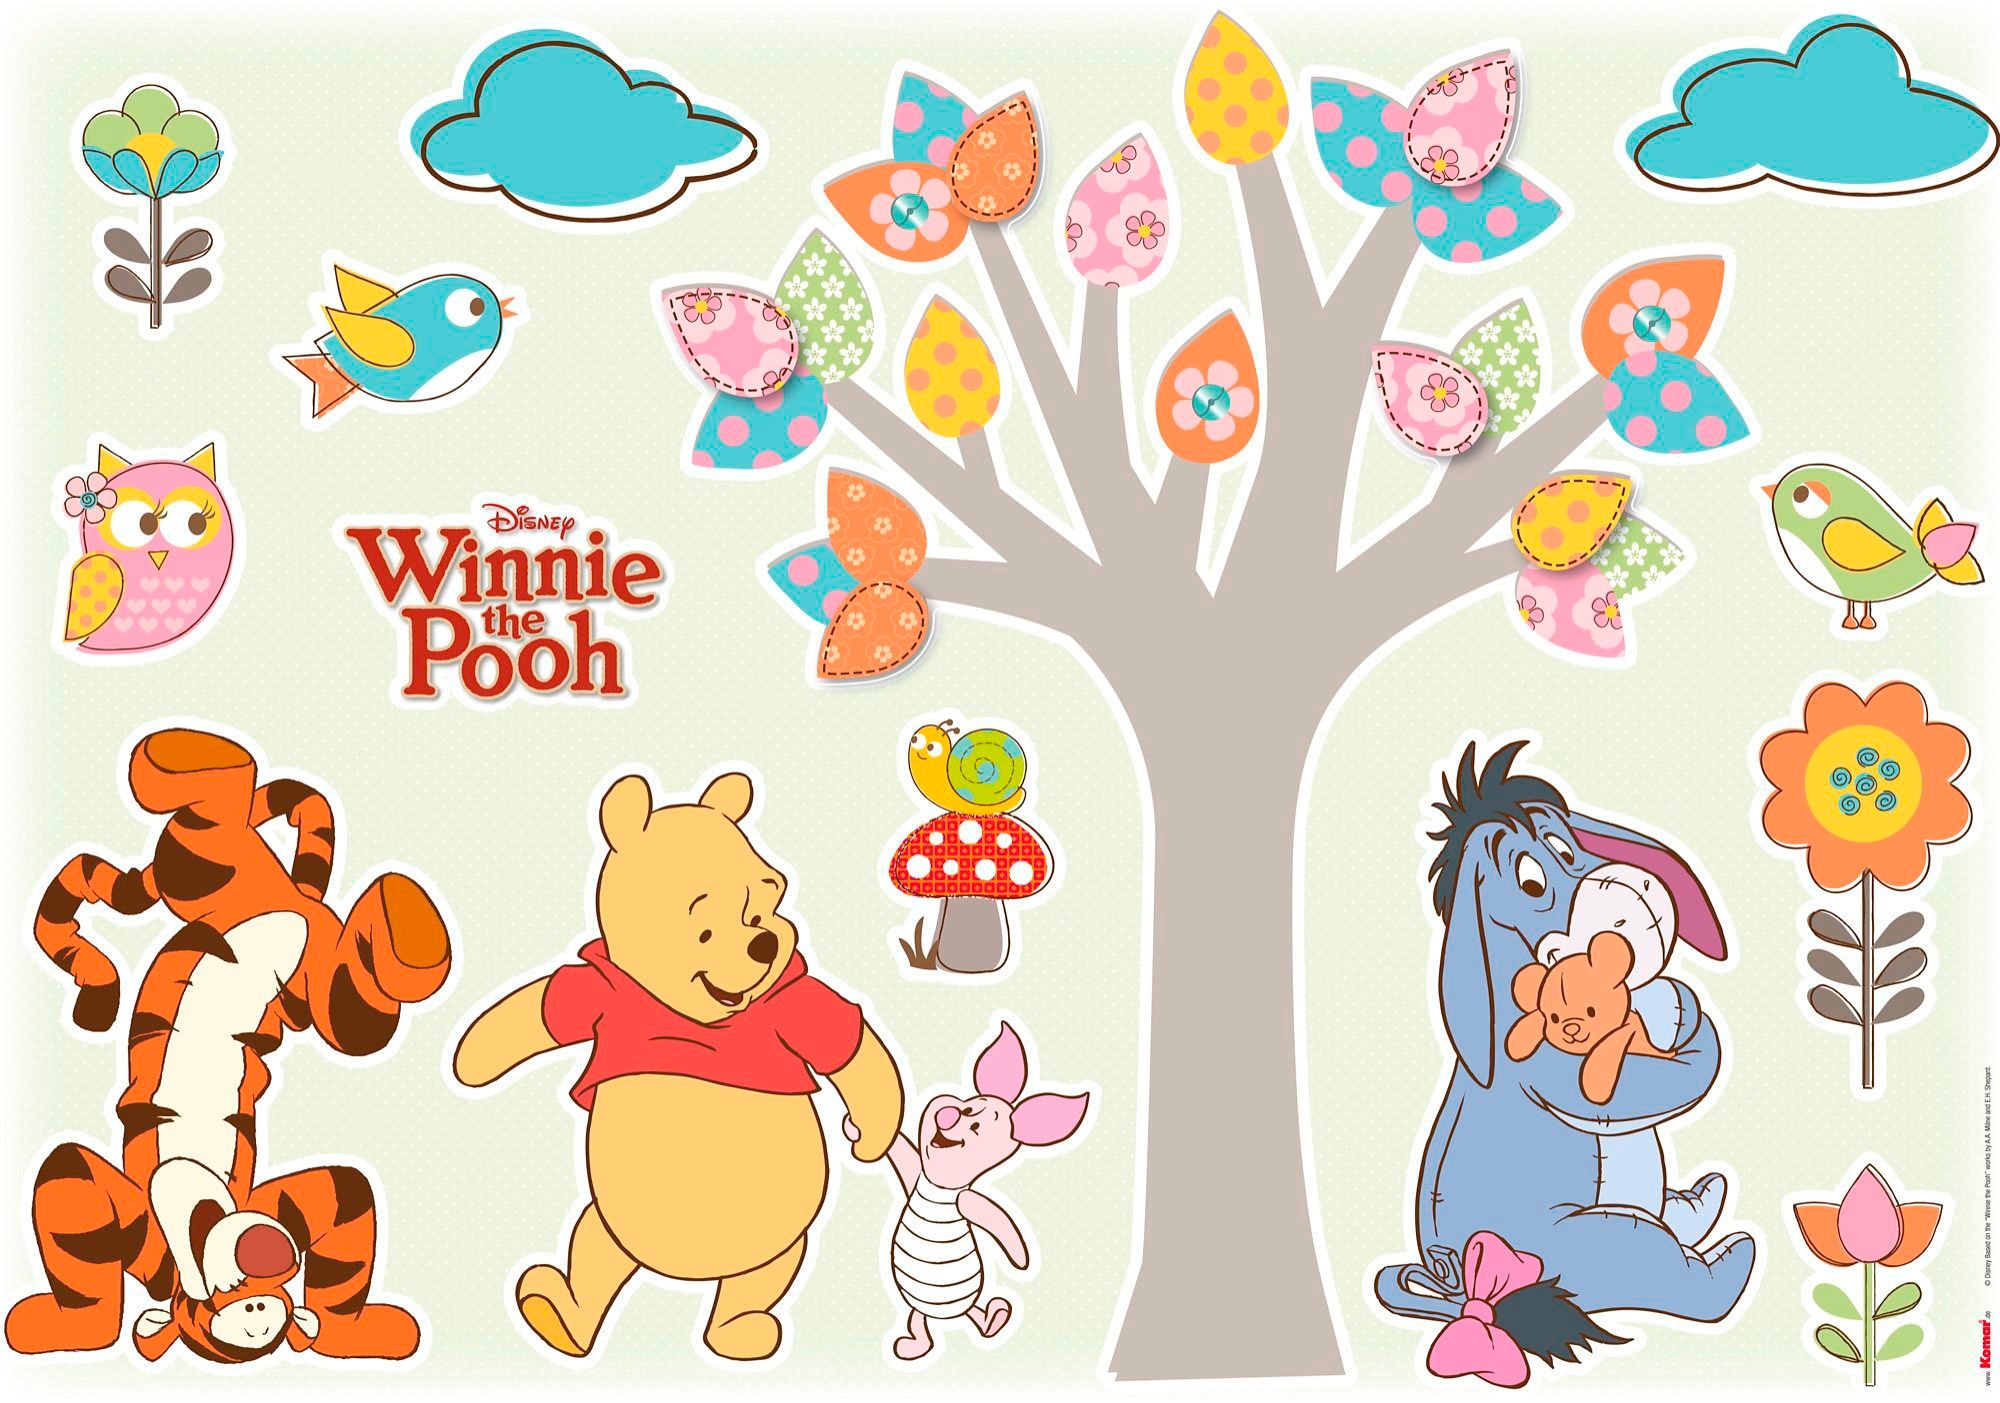 Komar Wandtattoo »Winnie Pooh Nature Lovers«...